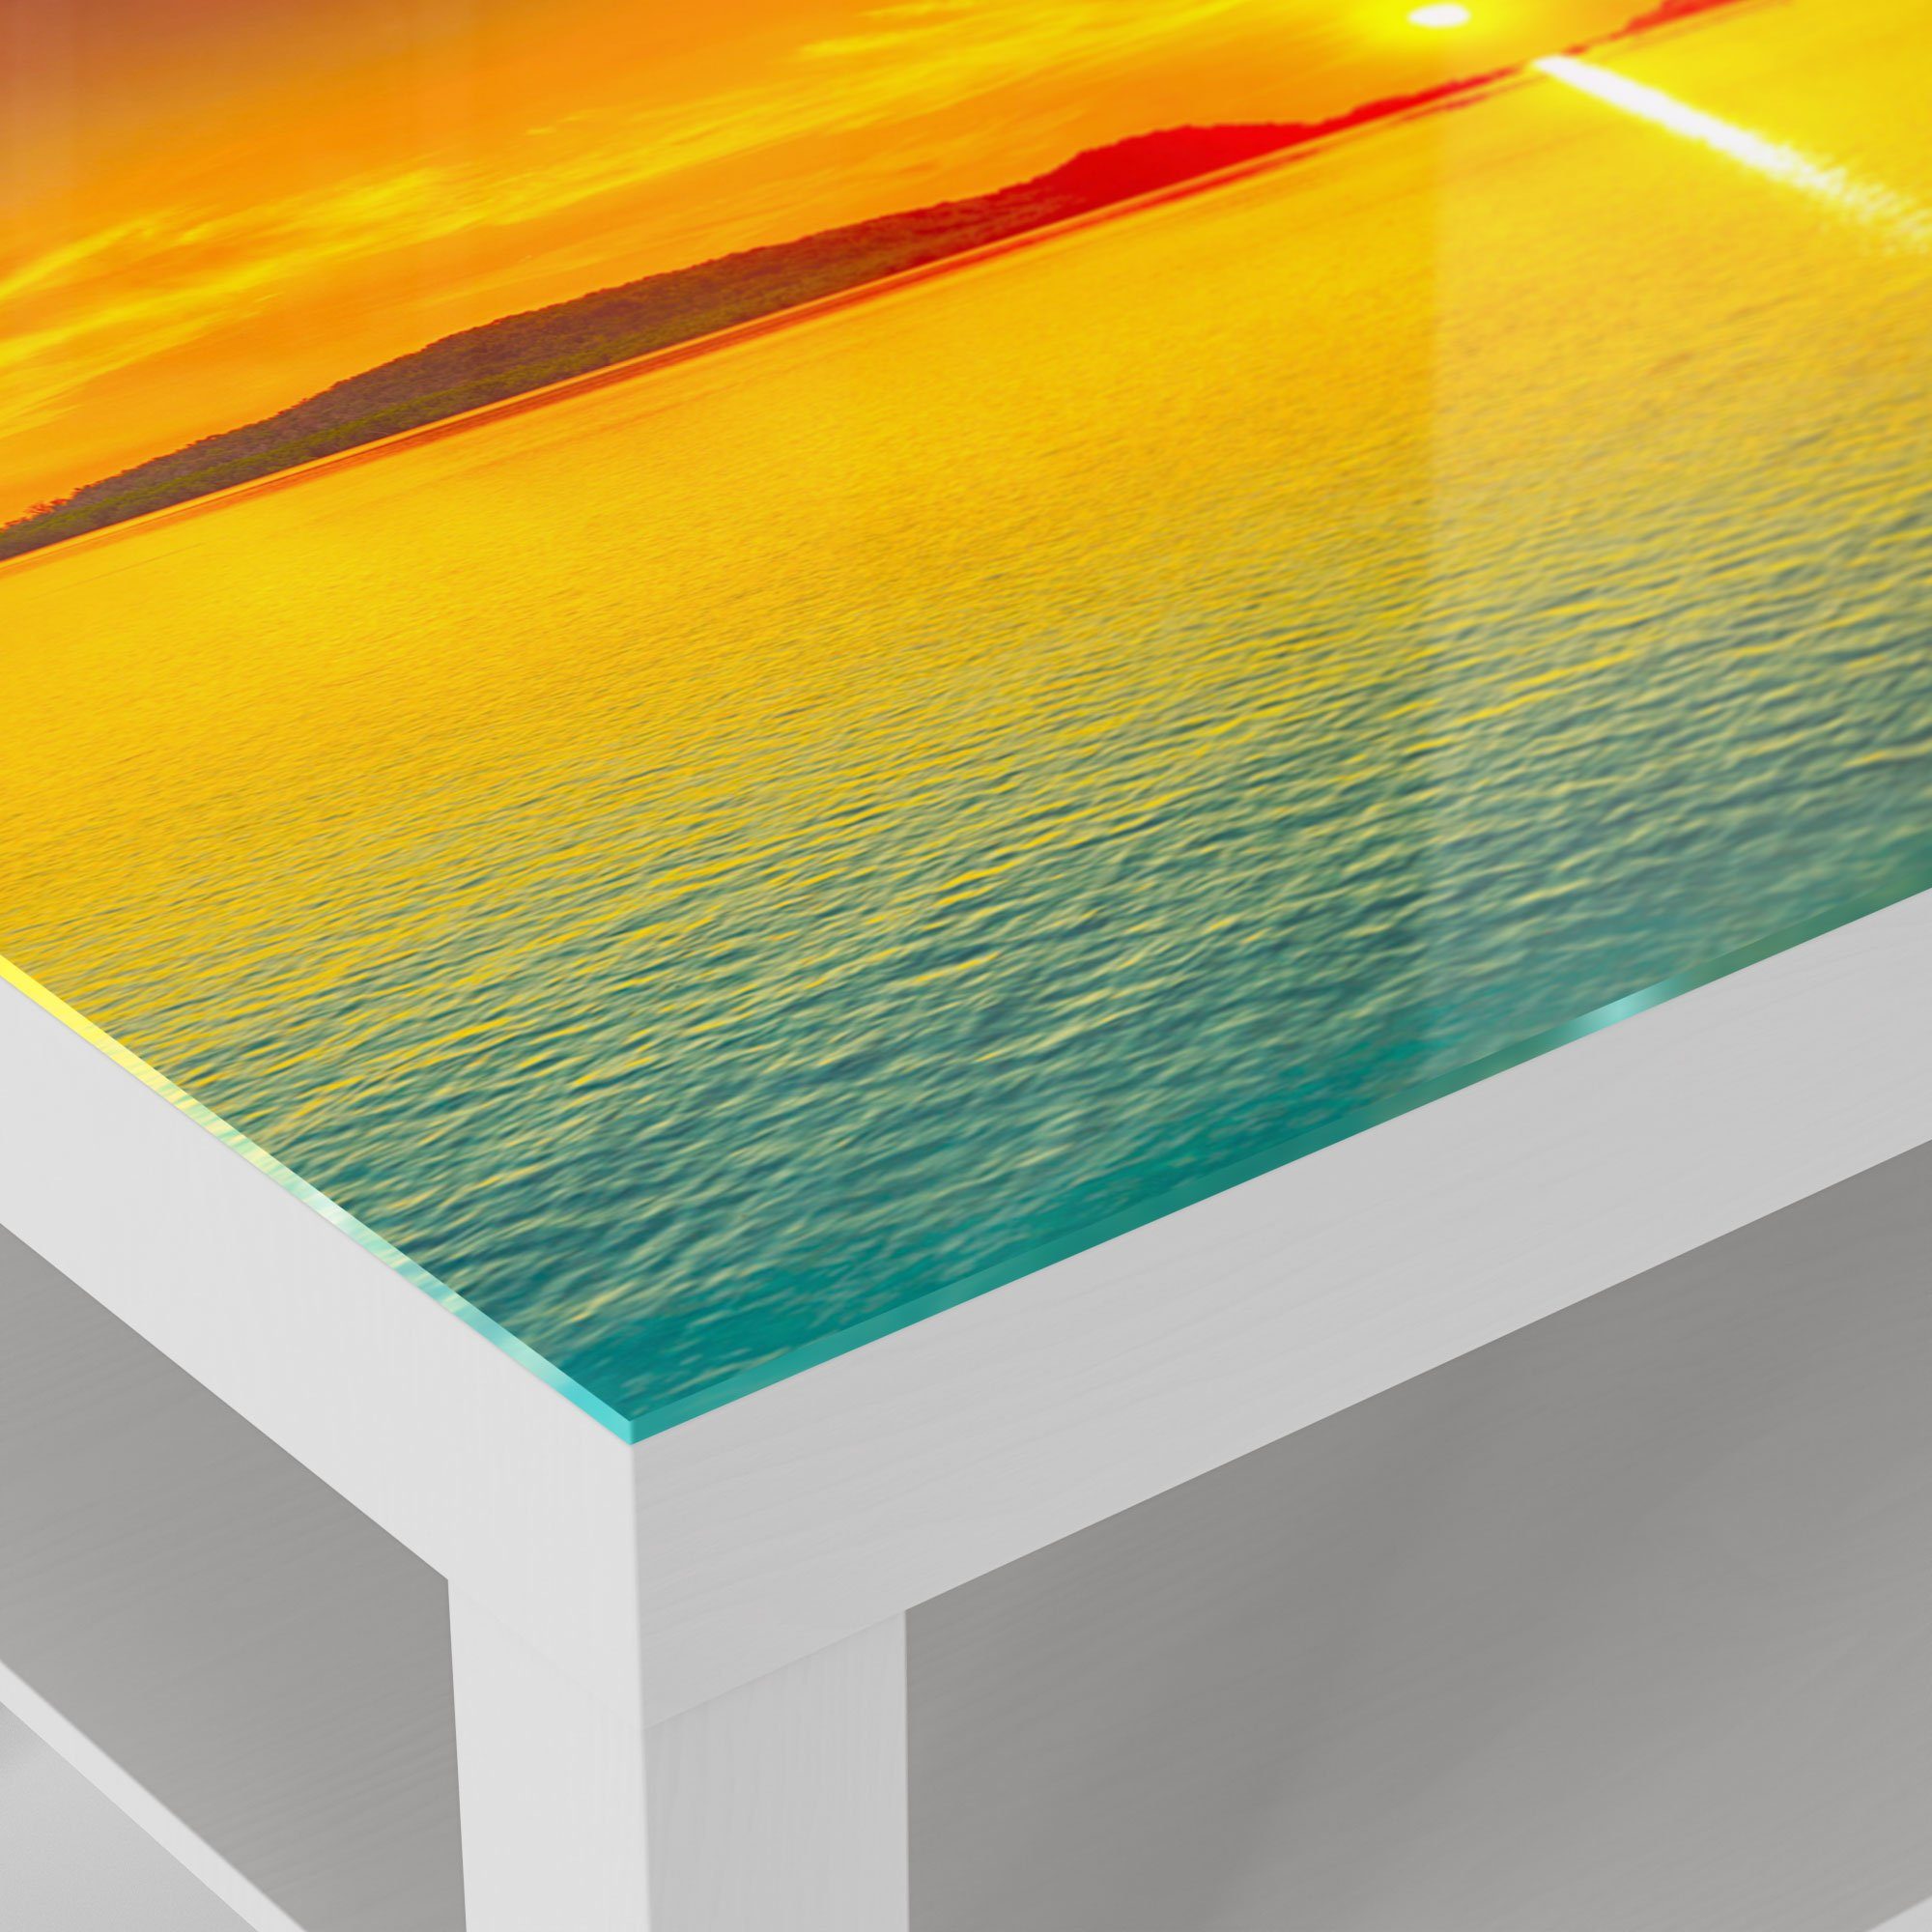 Glastisch Weiß Beistelltisch am DEQORI modern Horizont', Glas Couchtisch 'Abendsonne